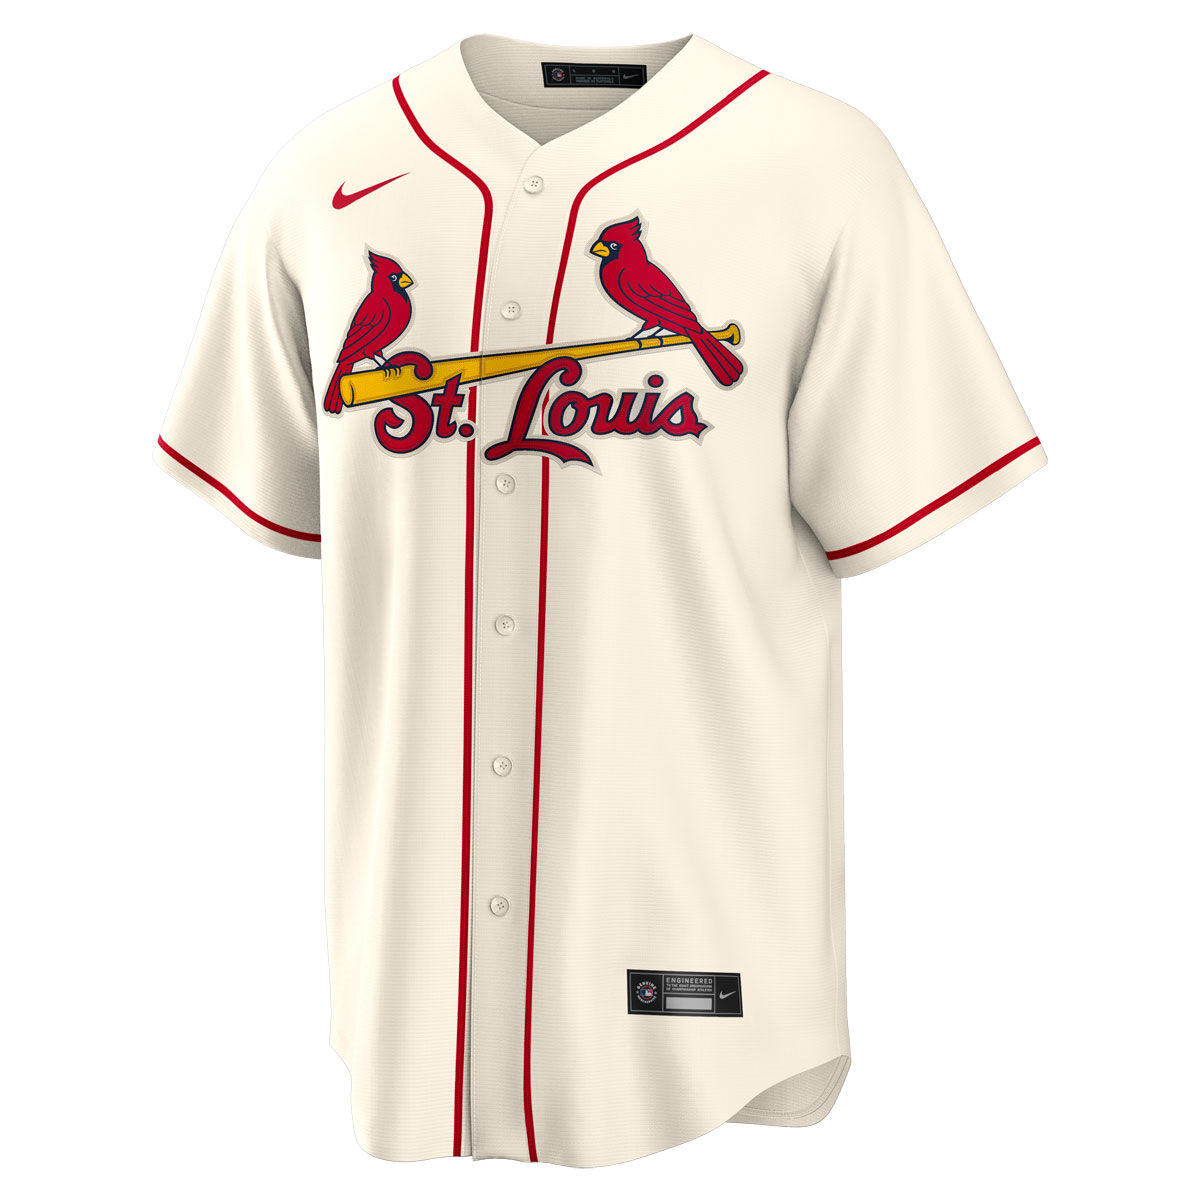 St. Louis Cardinals Black Fan Jerseys for sale